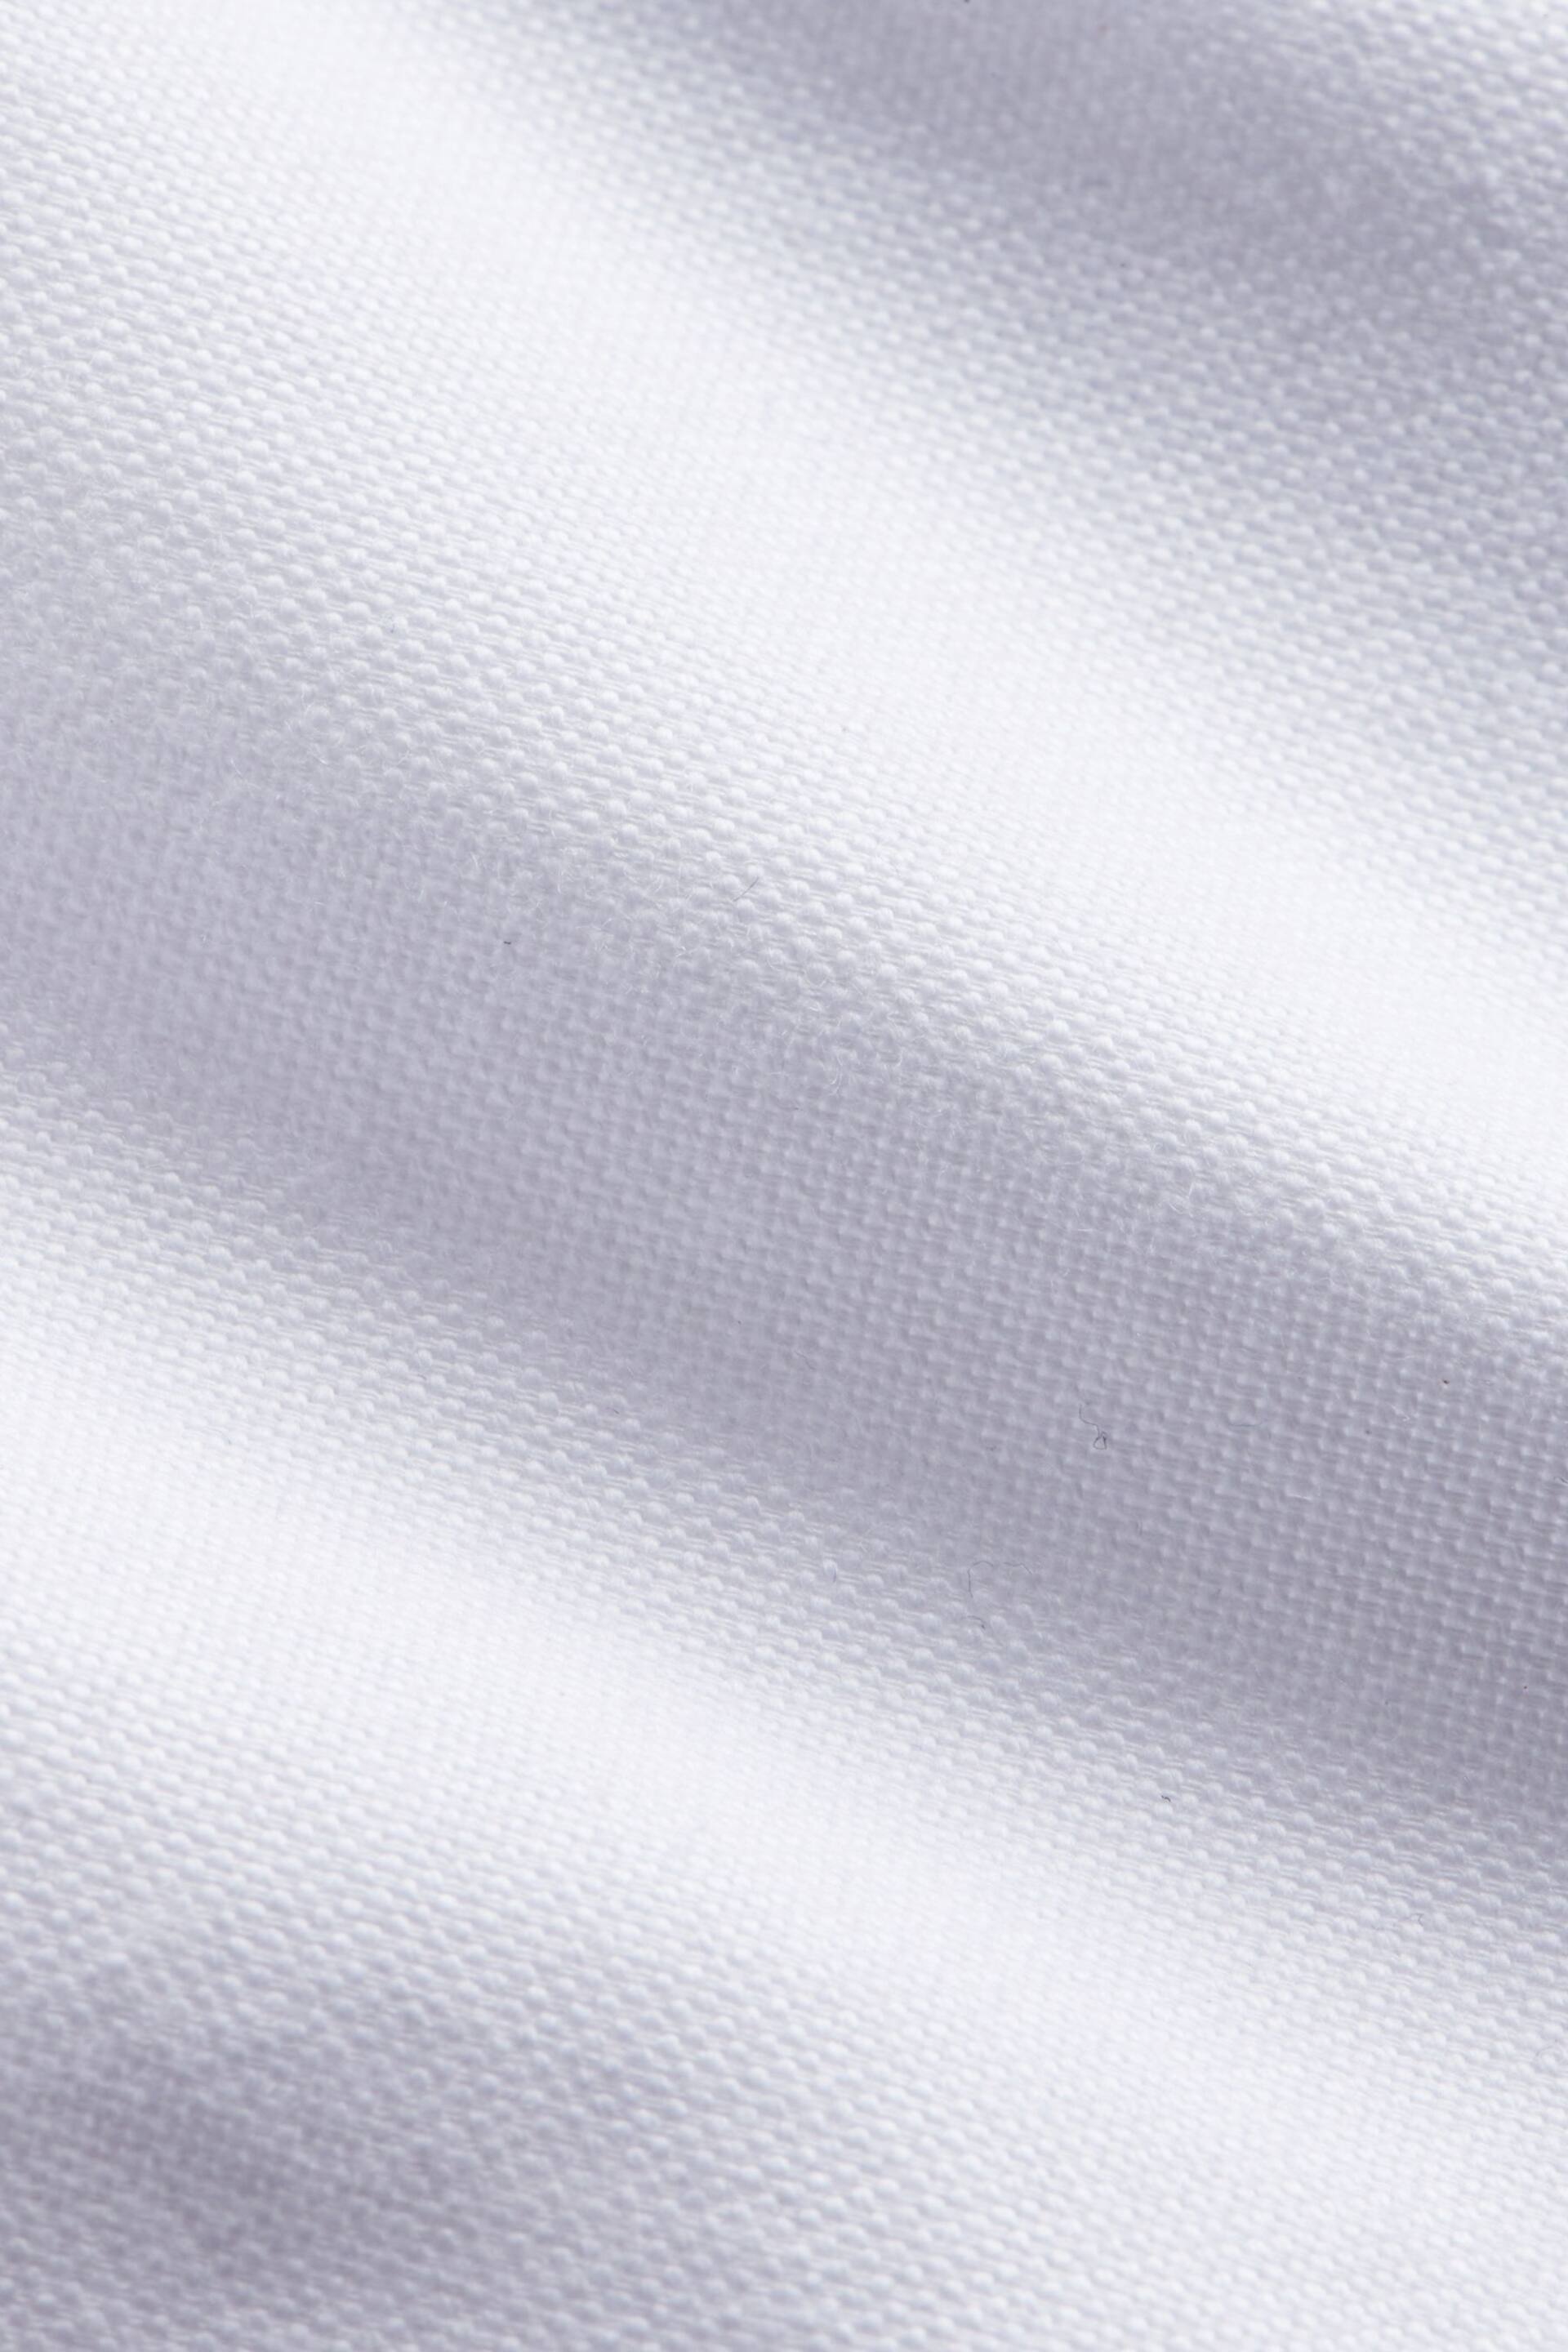 Peckham Rye Oxford Long Sleeve Shirt - Image 7 of 7